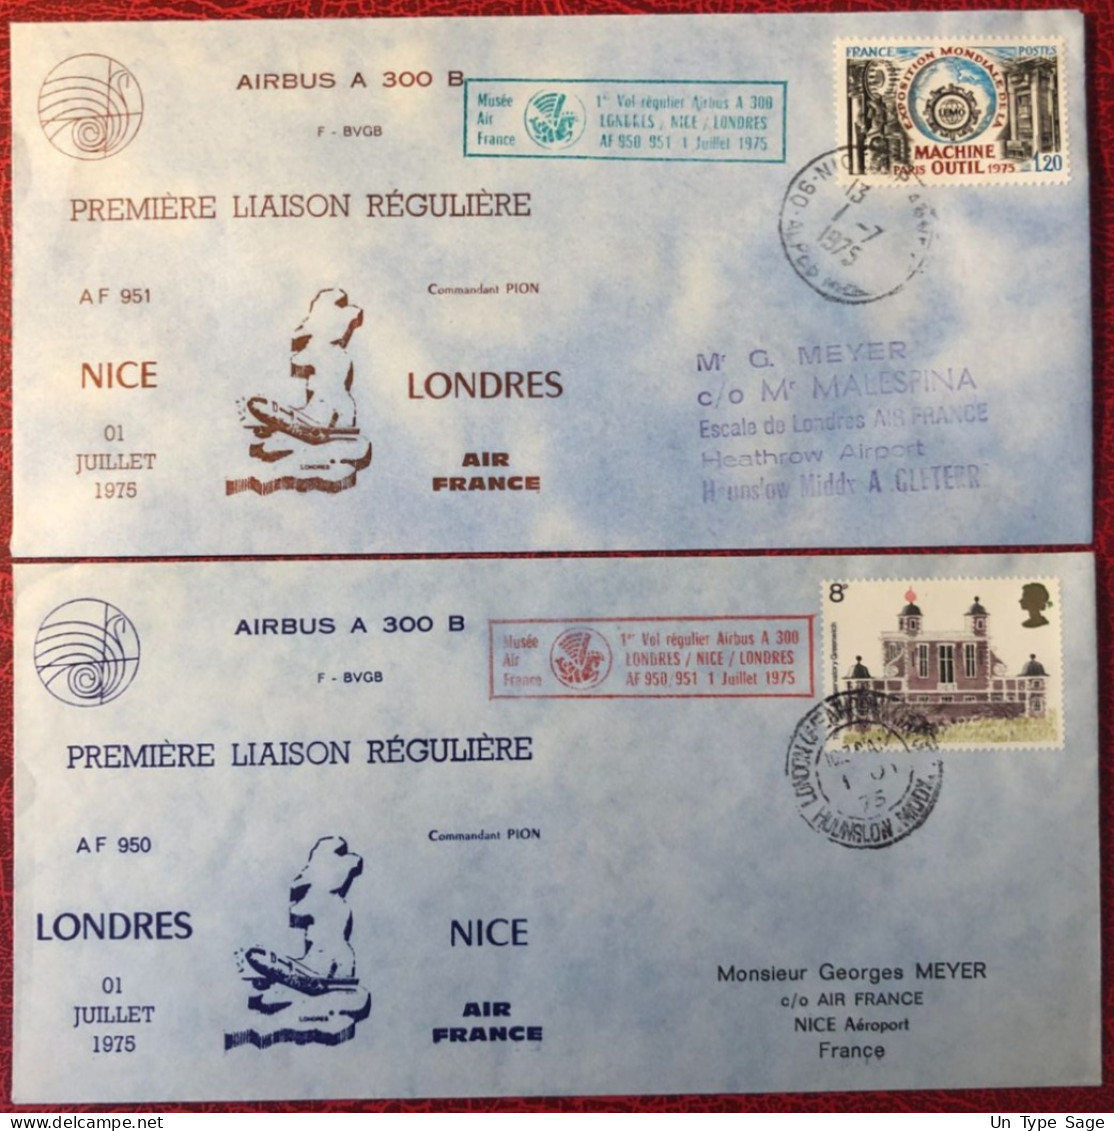 France, Premier Vol (Airbus A300) NICE / LONDRES 1.7.1975 - 2 Enveloppes - (A1498) - Premiers Vols